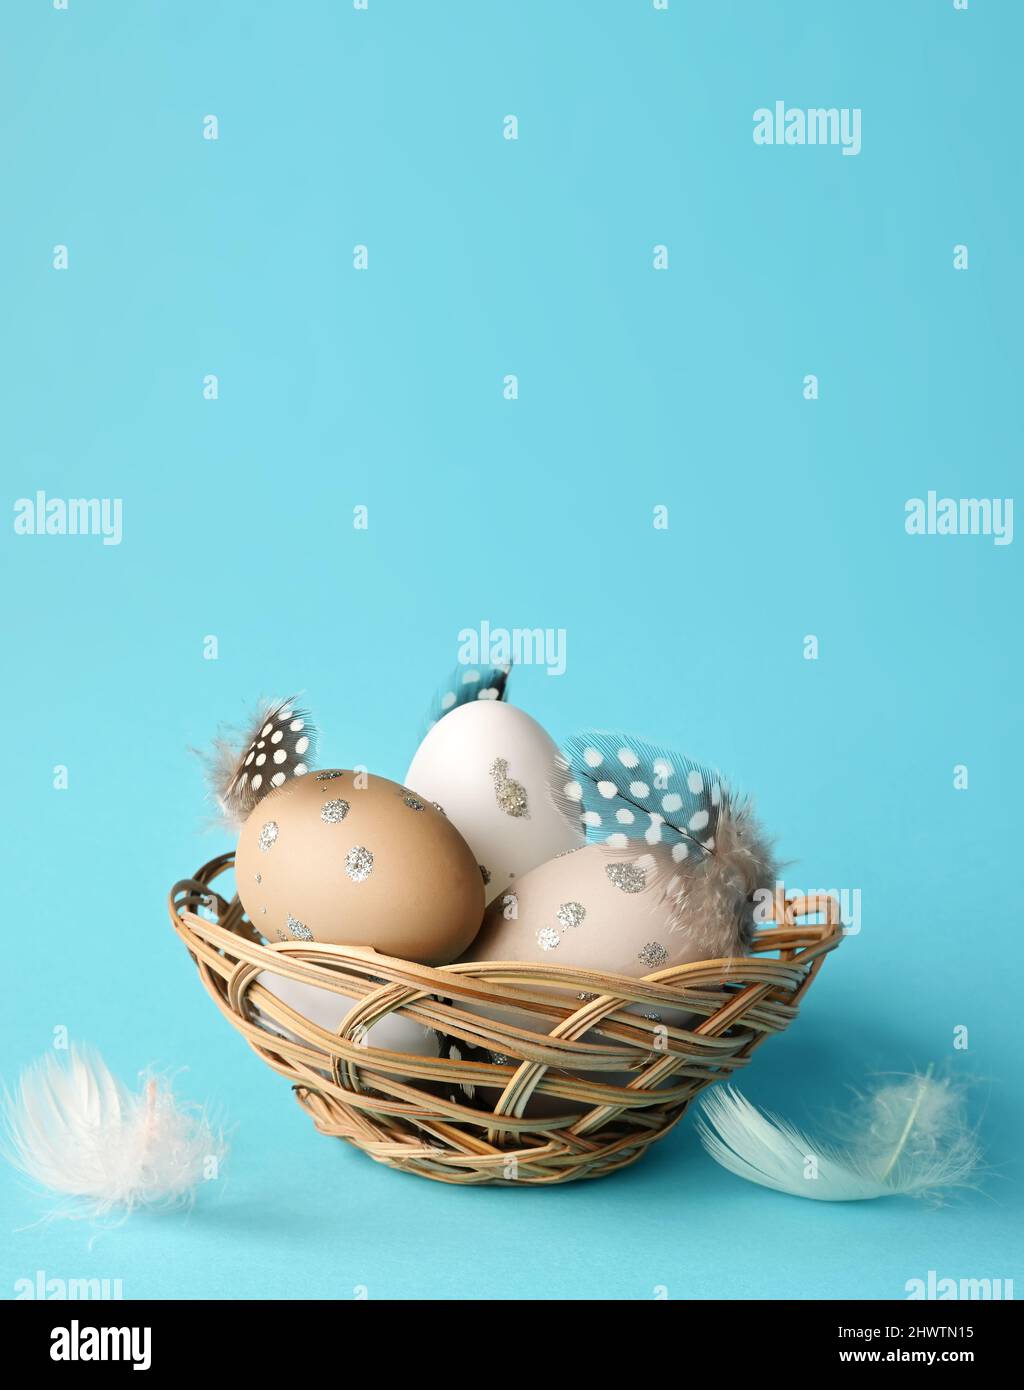 Oeufs de Pâques dans un nid avec des plumes sur fond bleu. Concept de vacances. Banque D'Images